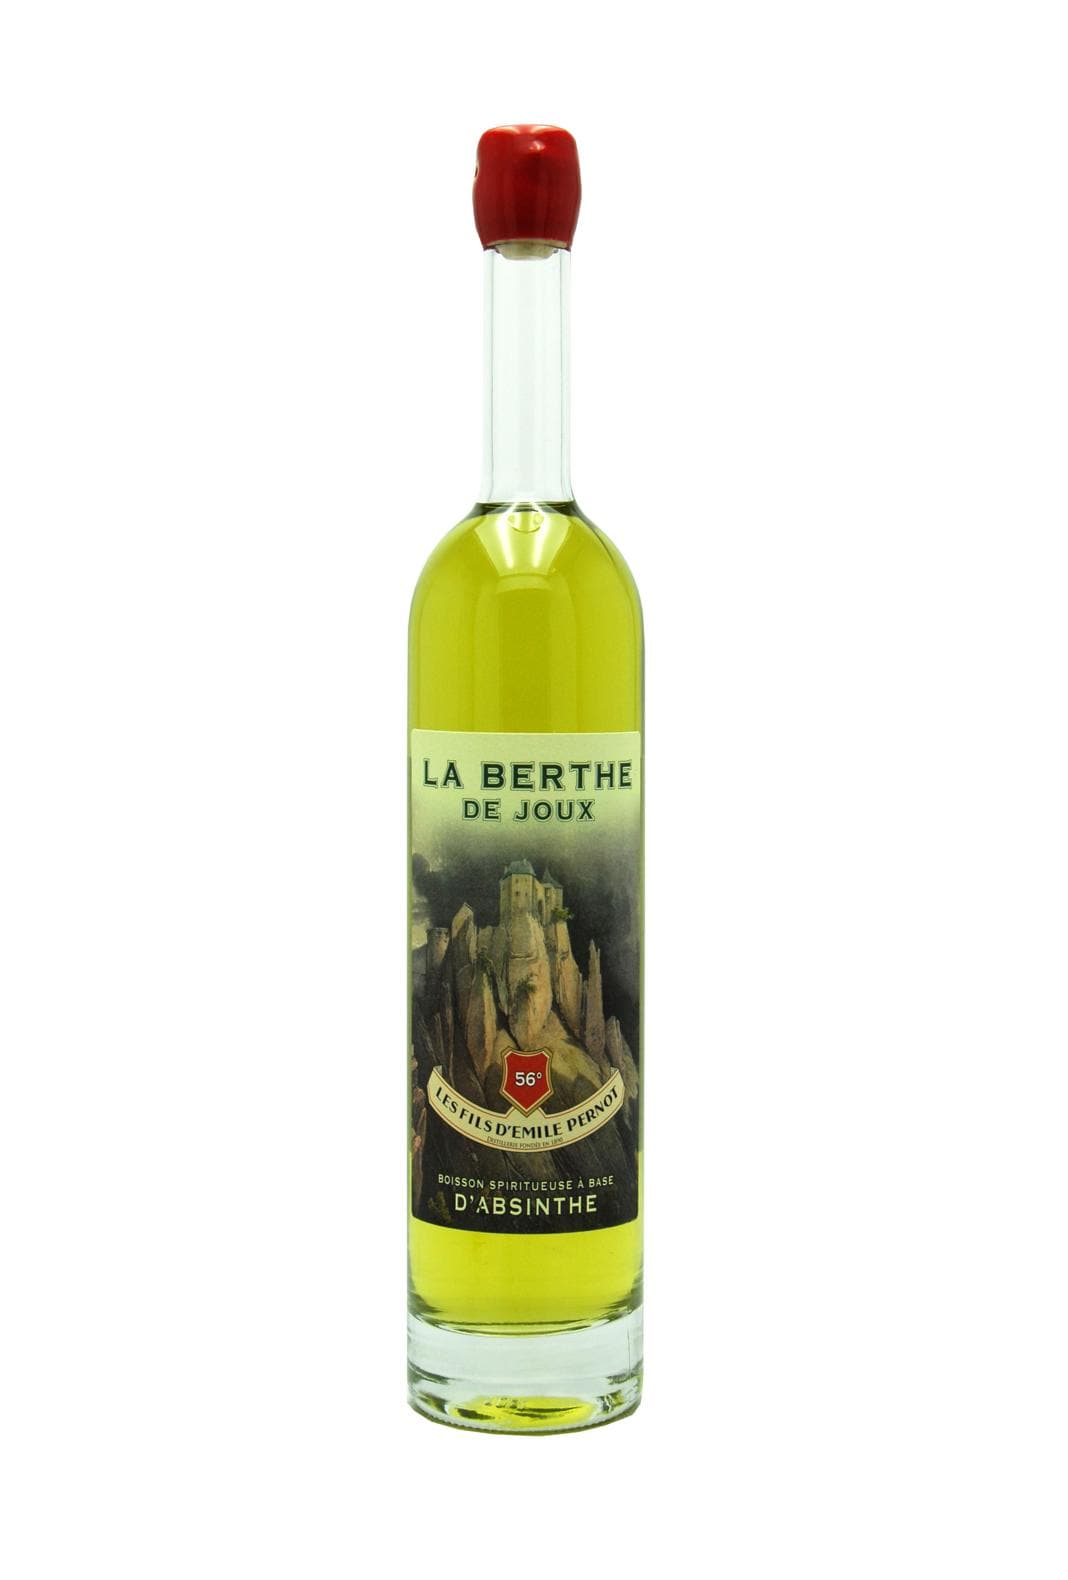 Distillerie Pernot Absinthe Berthe de Joux 56% 700ml | Liqueurs | Shop online at Spirits of France